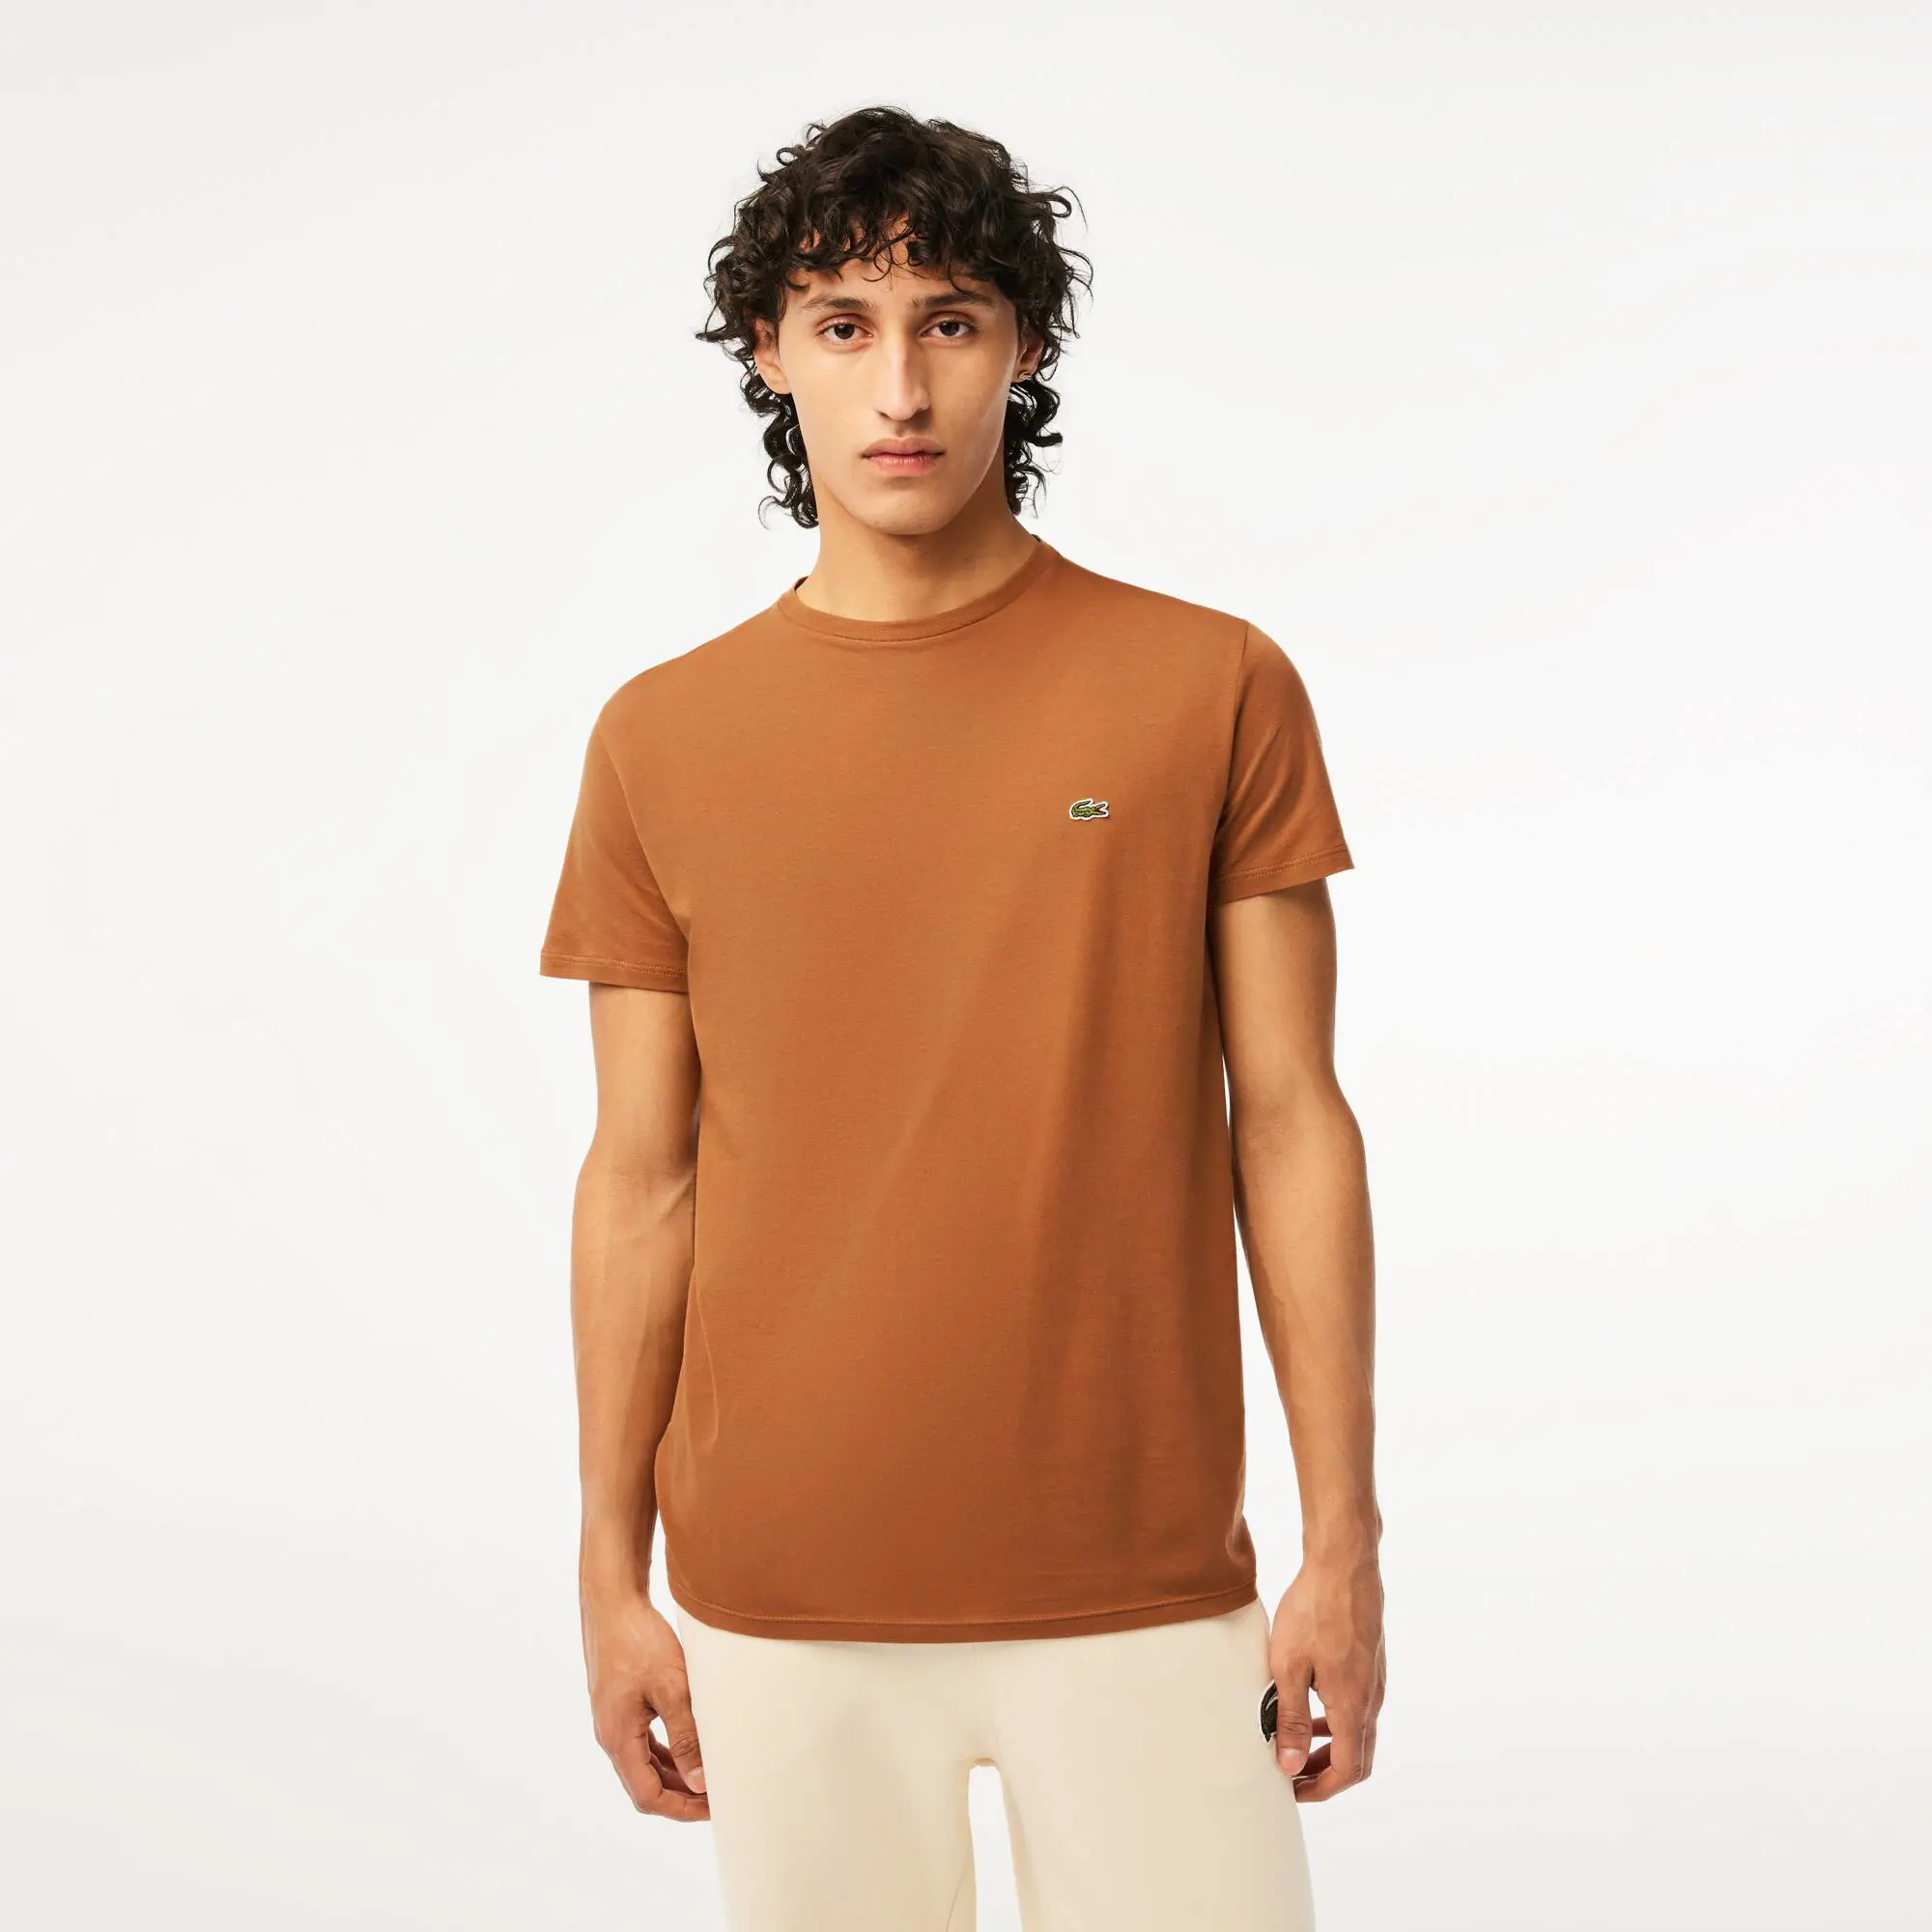 Lacoste T-shirt decote redondo em jersey de algodão pima unicolor. 1